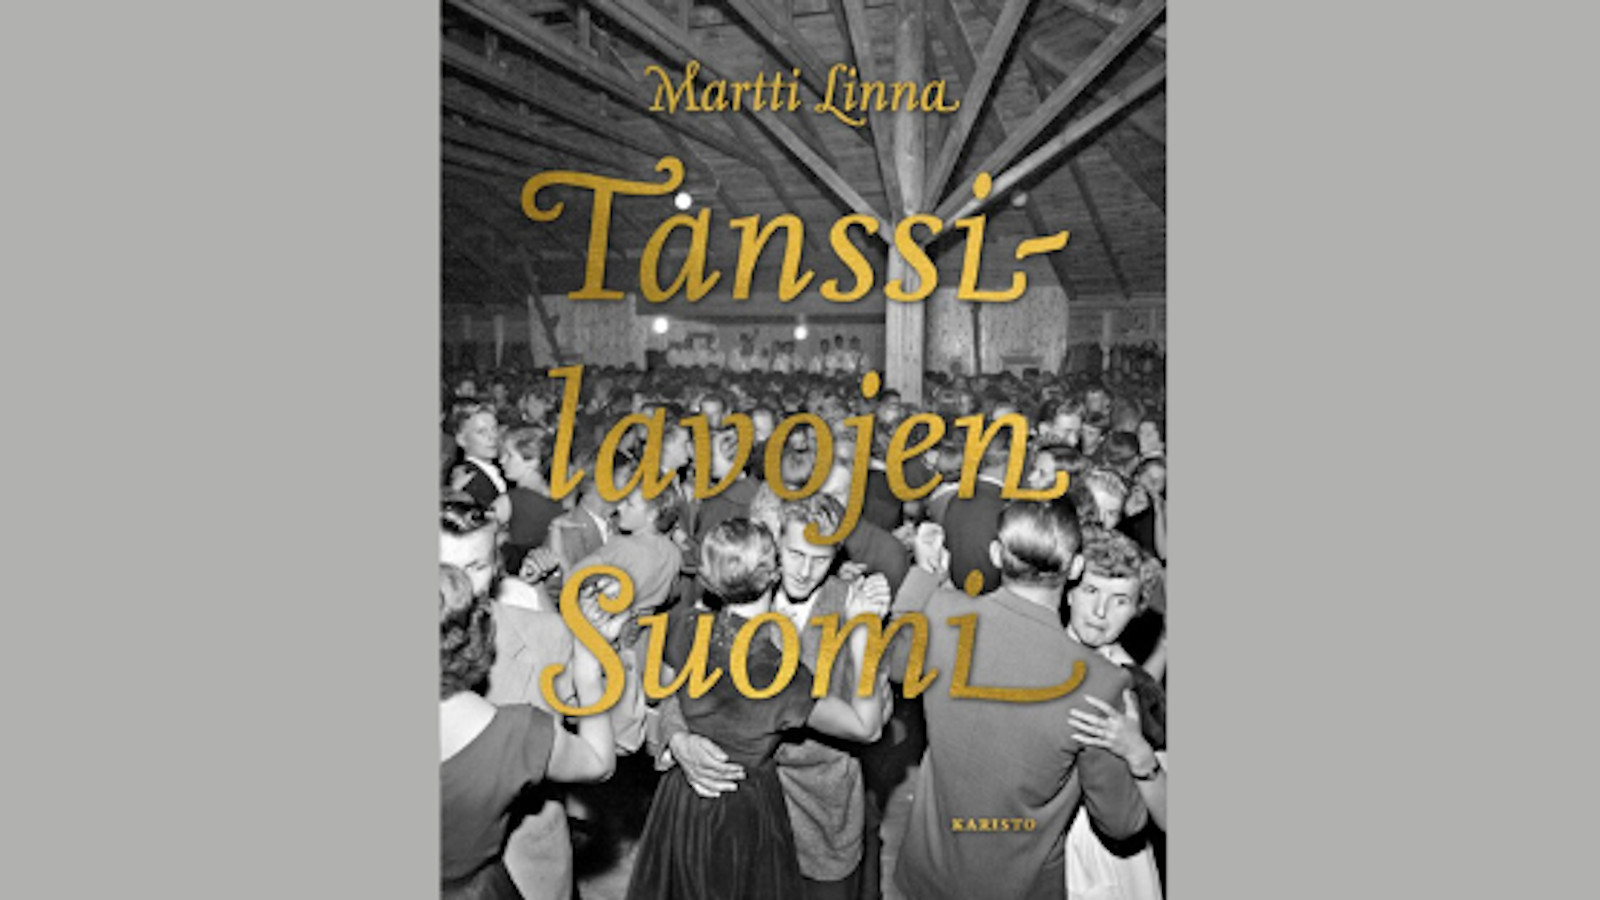 Kuvassa on kirjan kansikuvassa tanssilavayleisöä 1960-luvulla musta-valkokuvassa.  Kirjan nimi Tanssilavojen Suomi keltaisilla korukirjaimilla isolla ja yläpuolella kirjan kirjoittajan nimi Martti LInna.